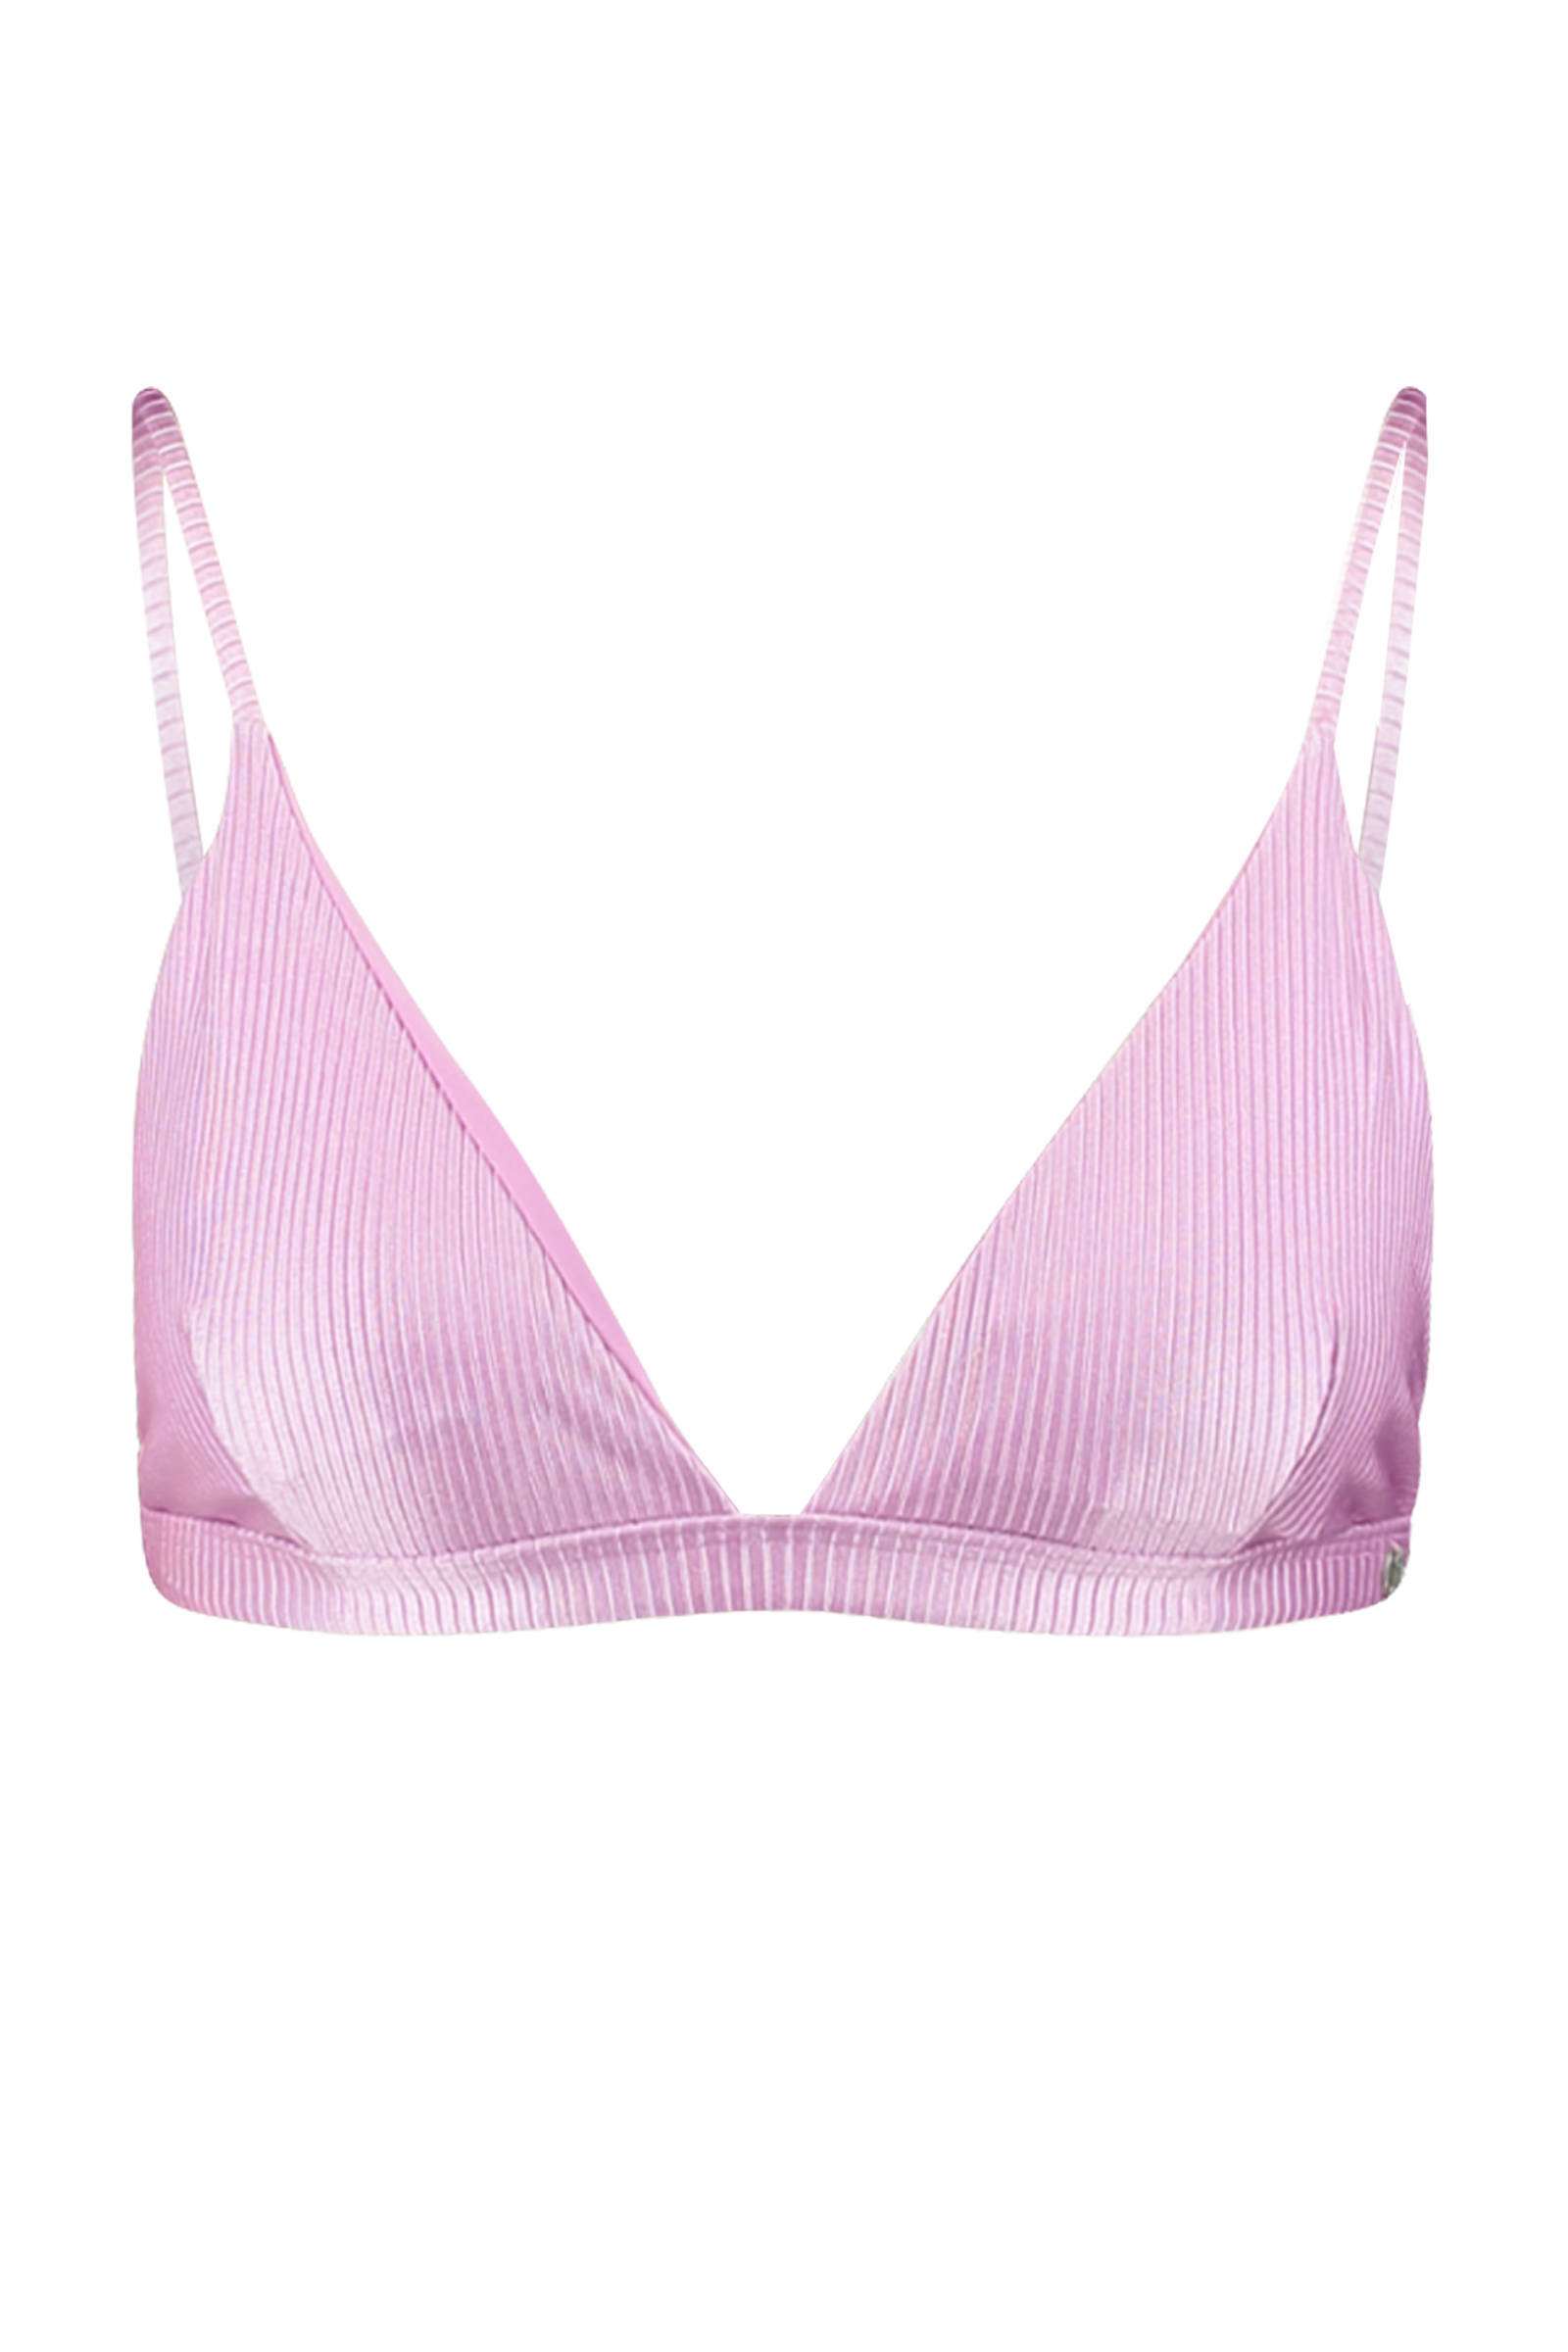 America Today bikinitop Audrey met rib structuur roze online kopen